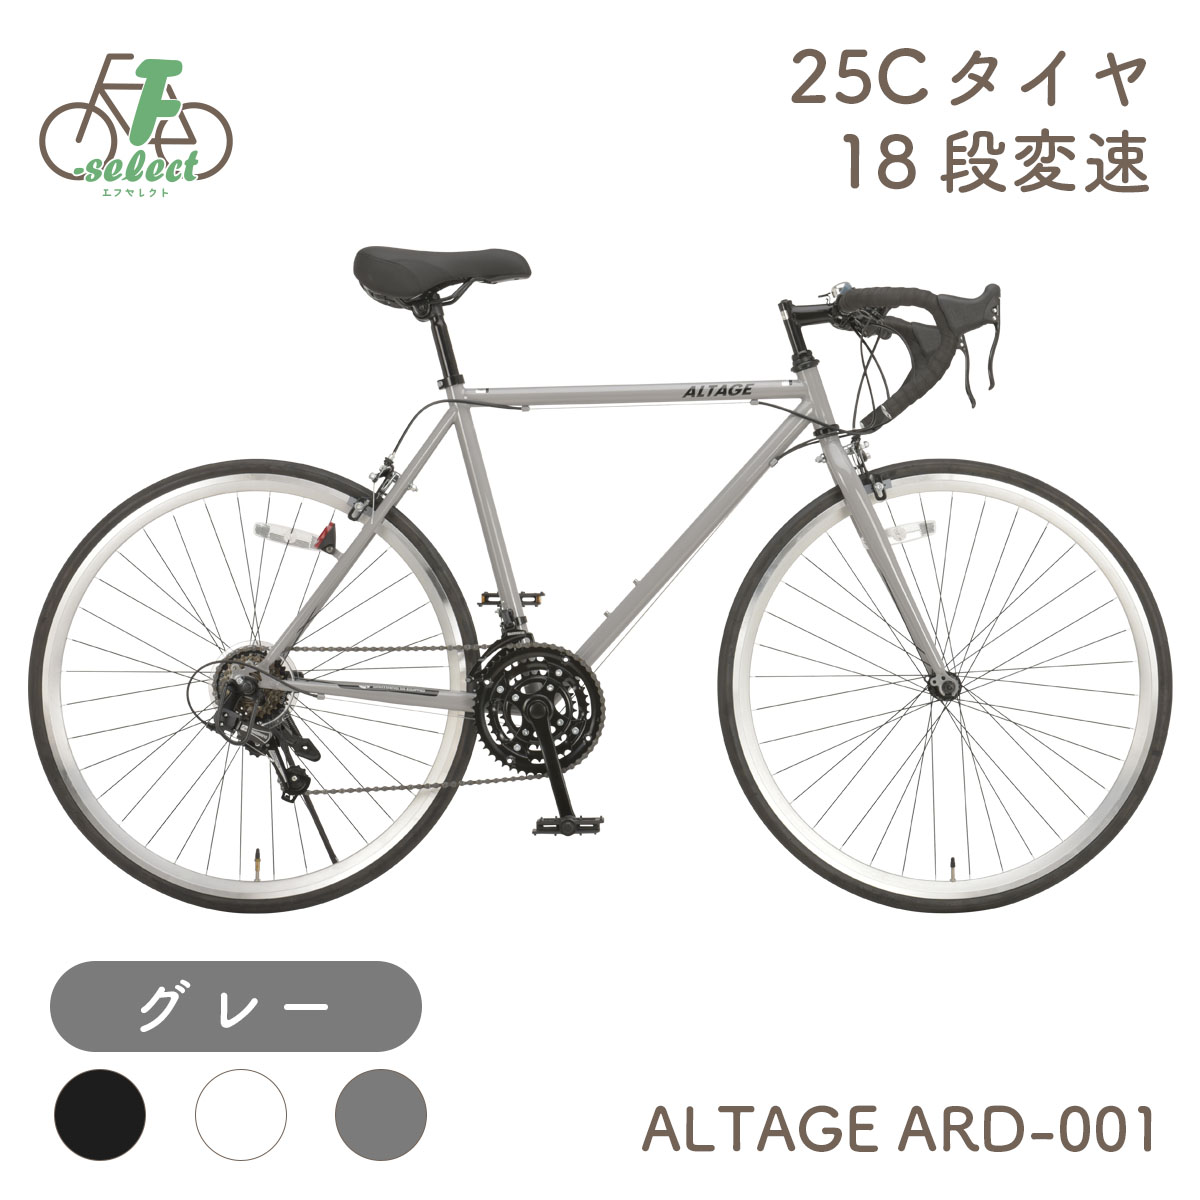 ロードバイク 完成品出荷 / 置き配可能 ロードレーサー 自転車 700×25C 18段変速 軽量 フレームサイズ500mm アルテージ ALTAGE  ARD-001